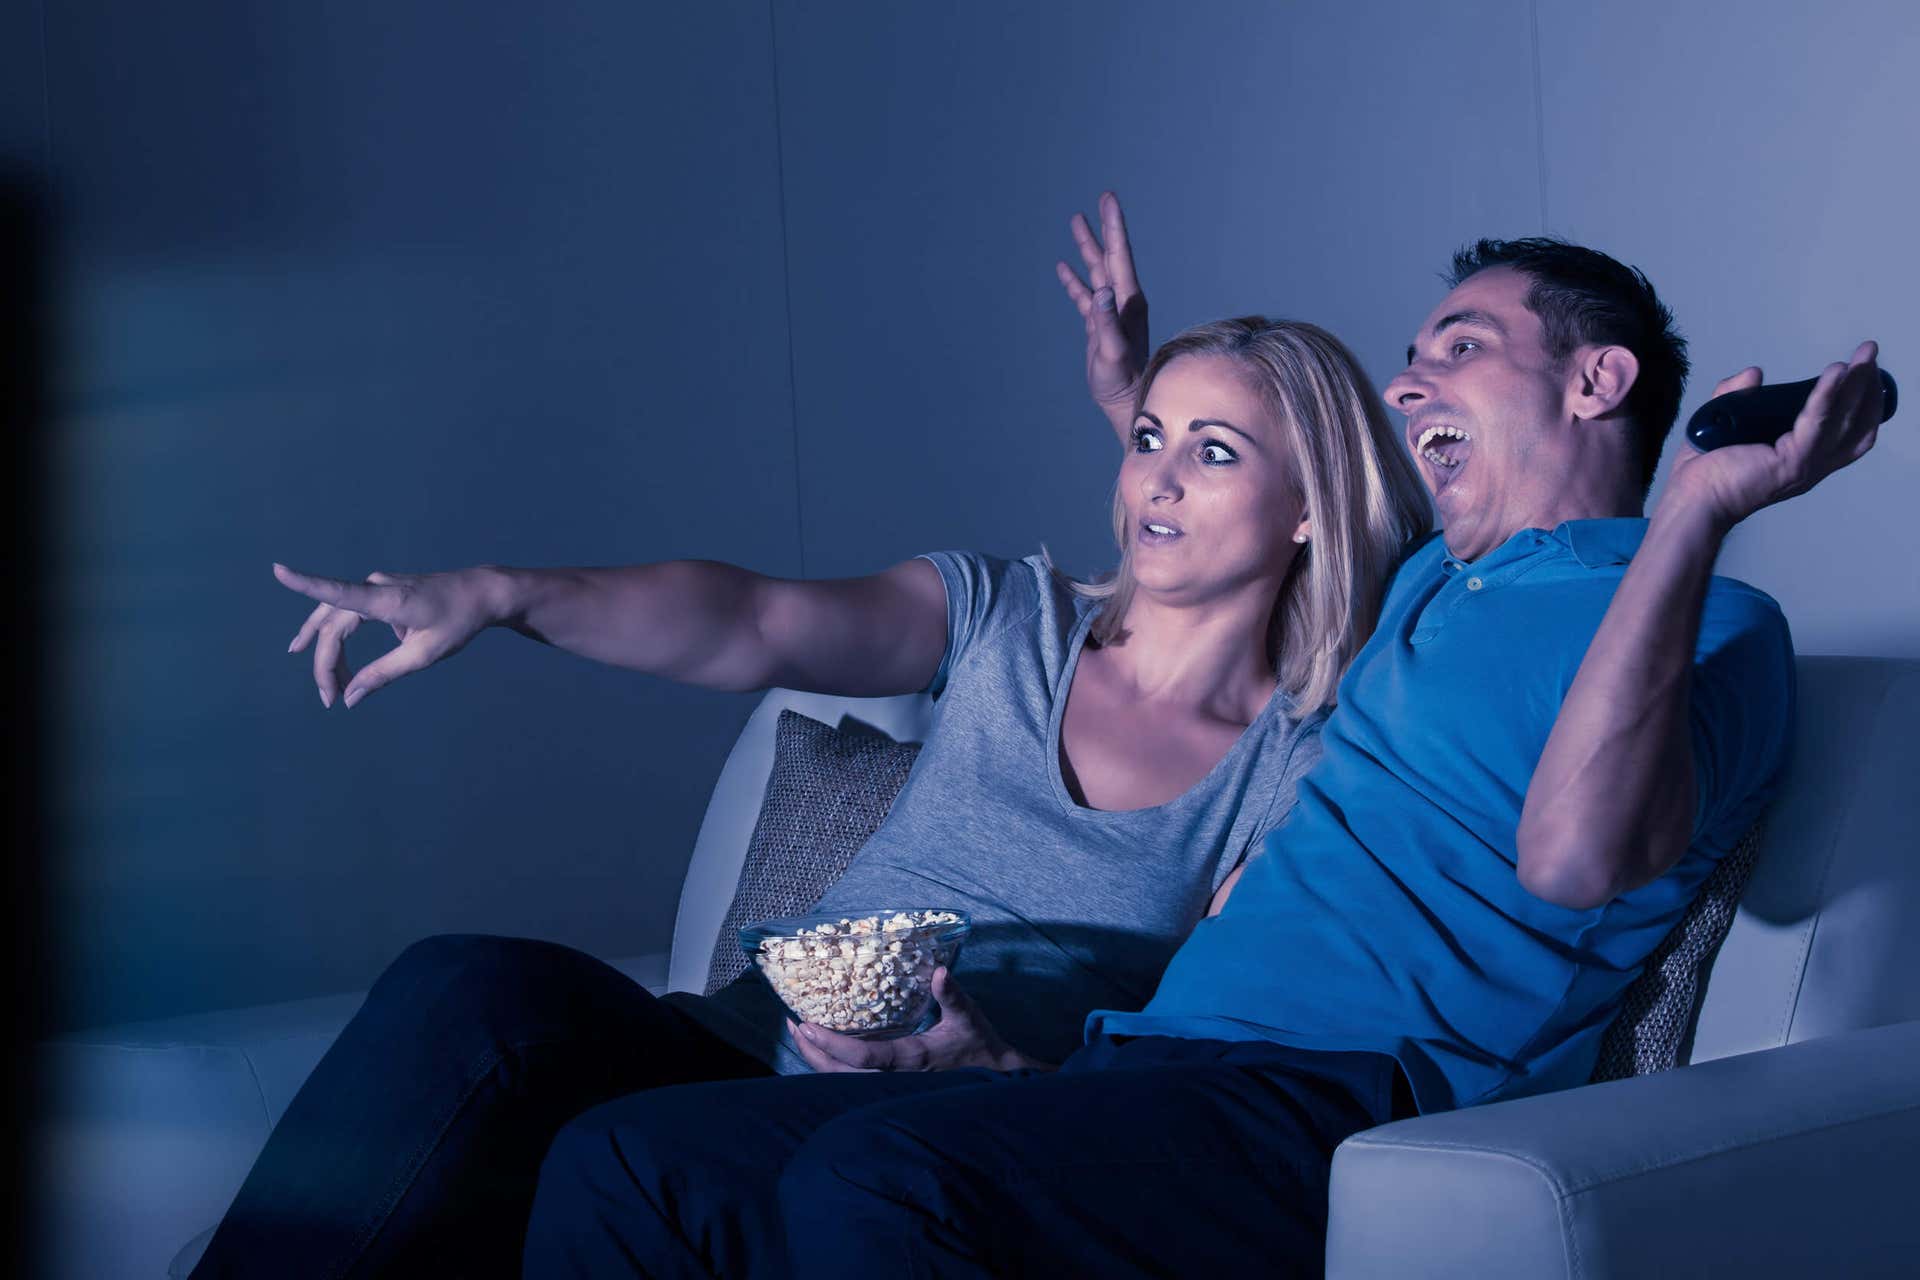 Mand og kvinde reagerer på en film